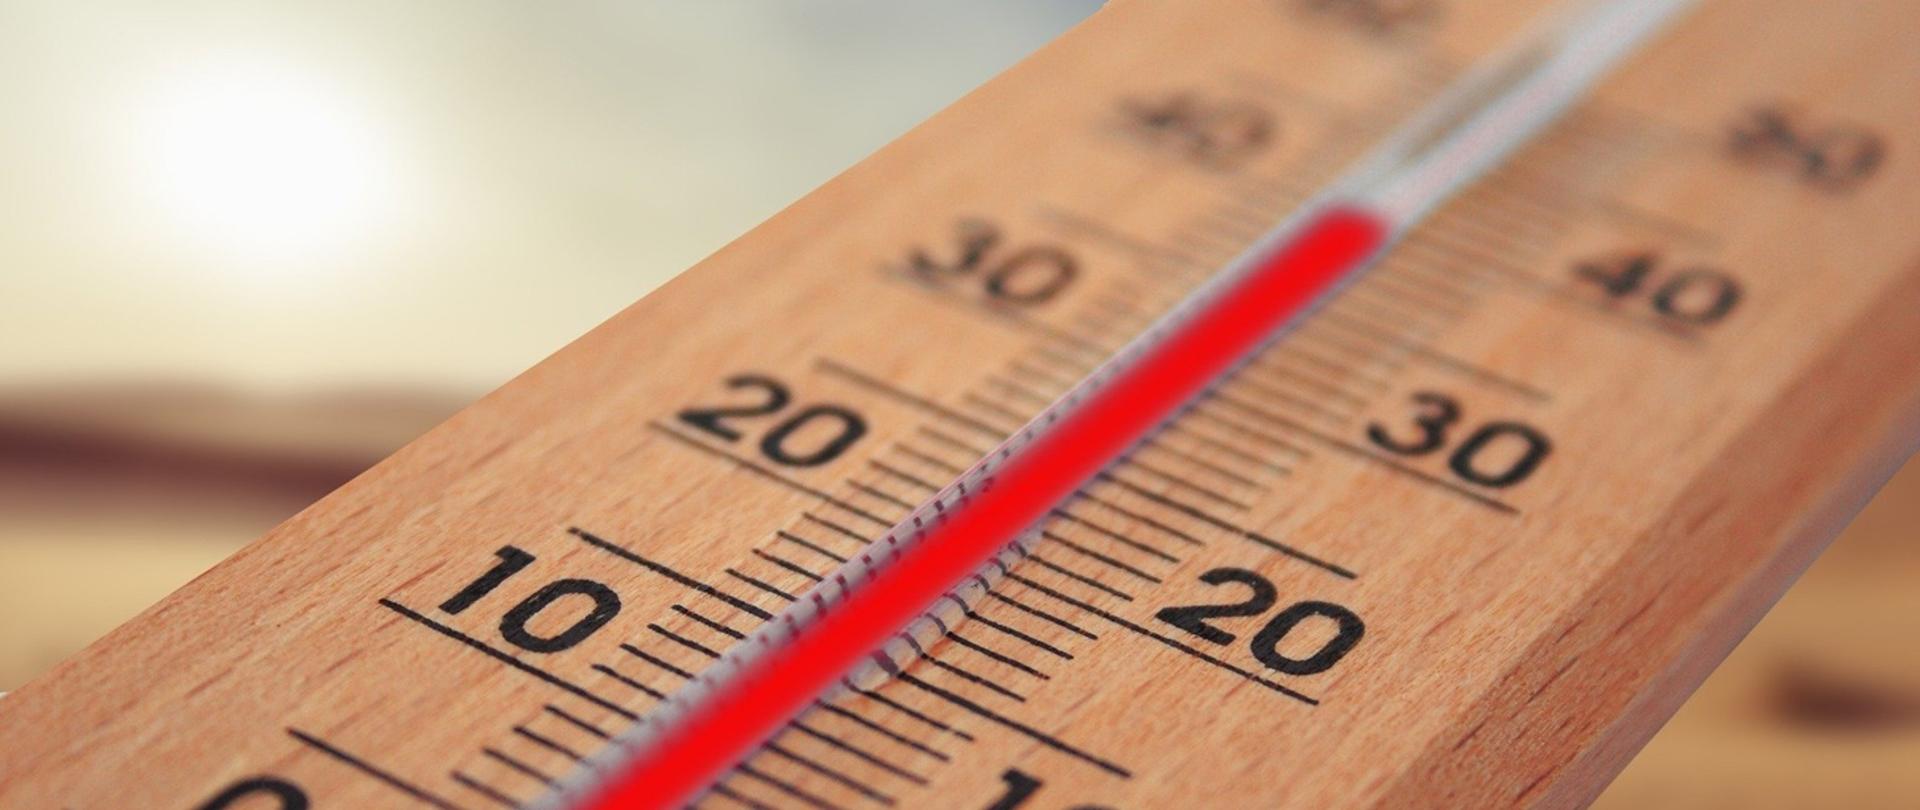 zdjęcie przedstawia termometr wskazujący wysoką temperaturę